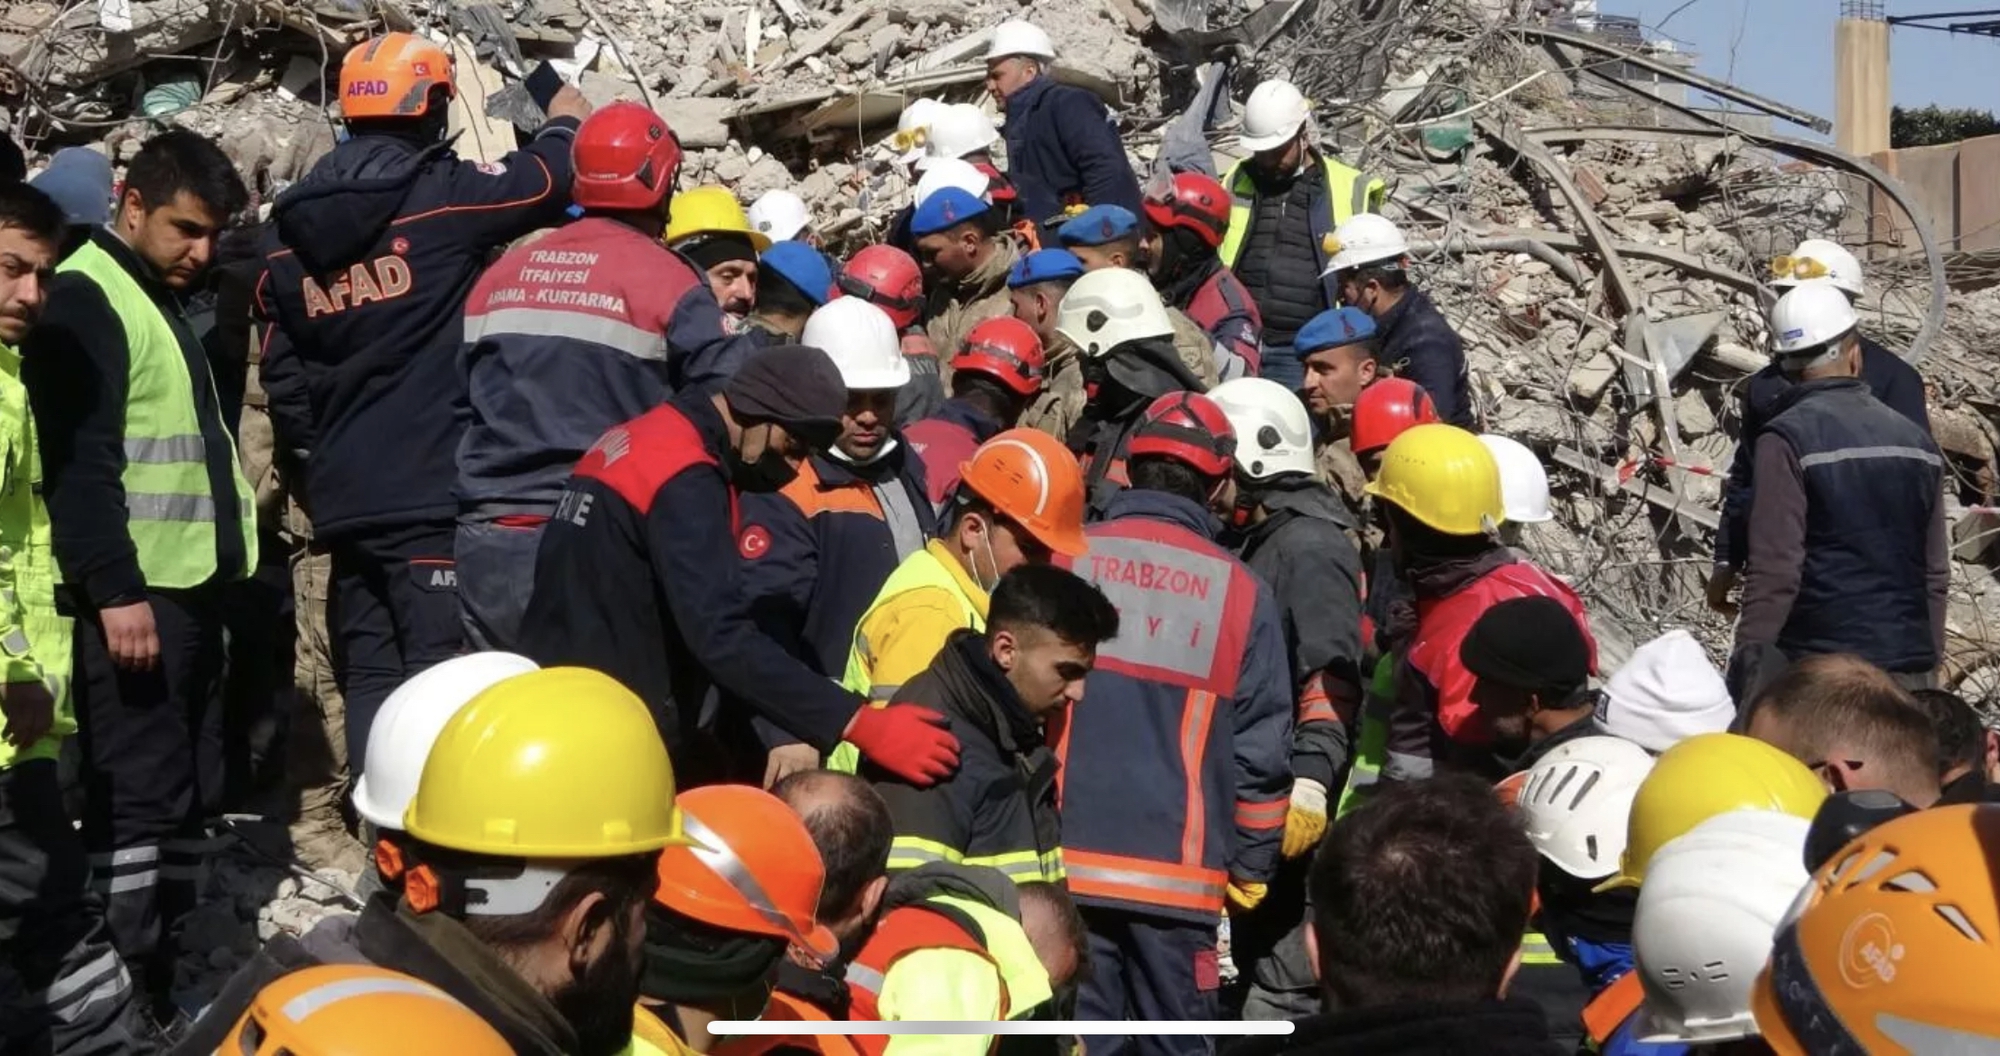 Thảm họa động đất: Những trường hợp khiến đội cứu hộ sửng sốt - Ảnh 1.